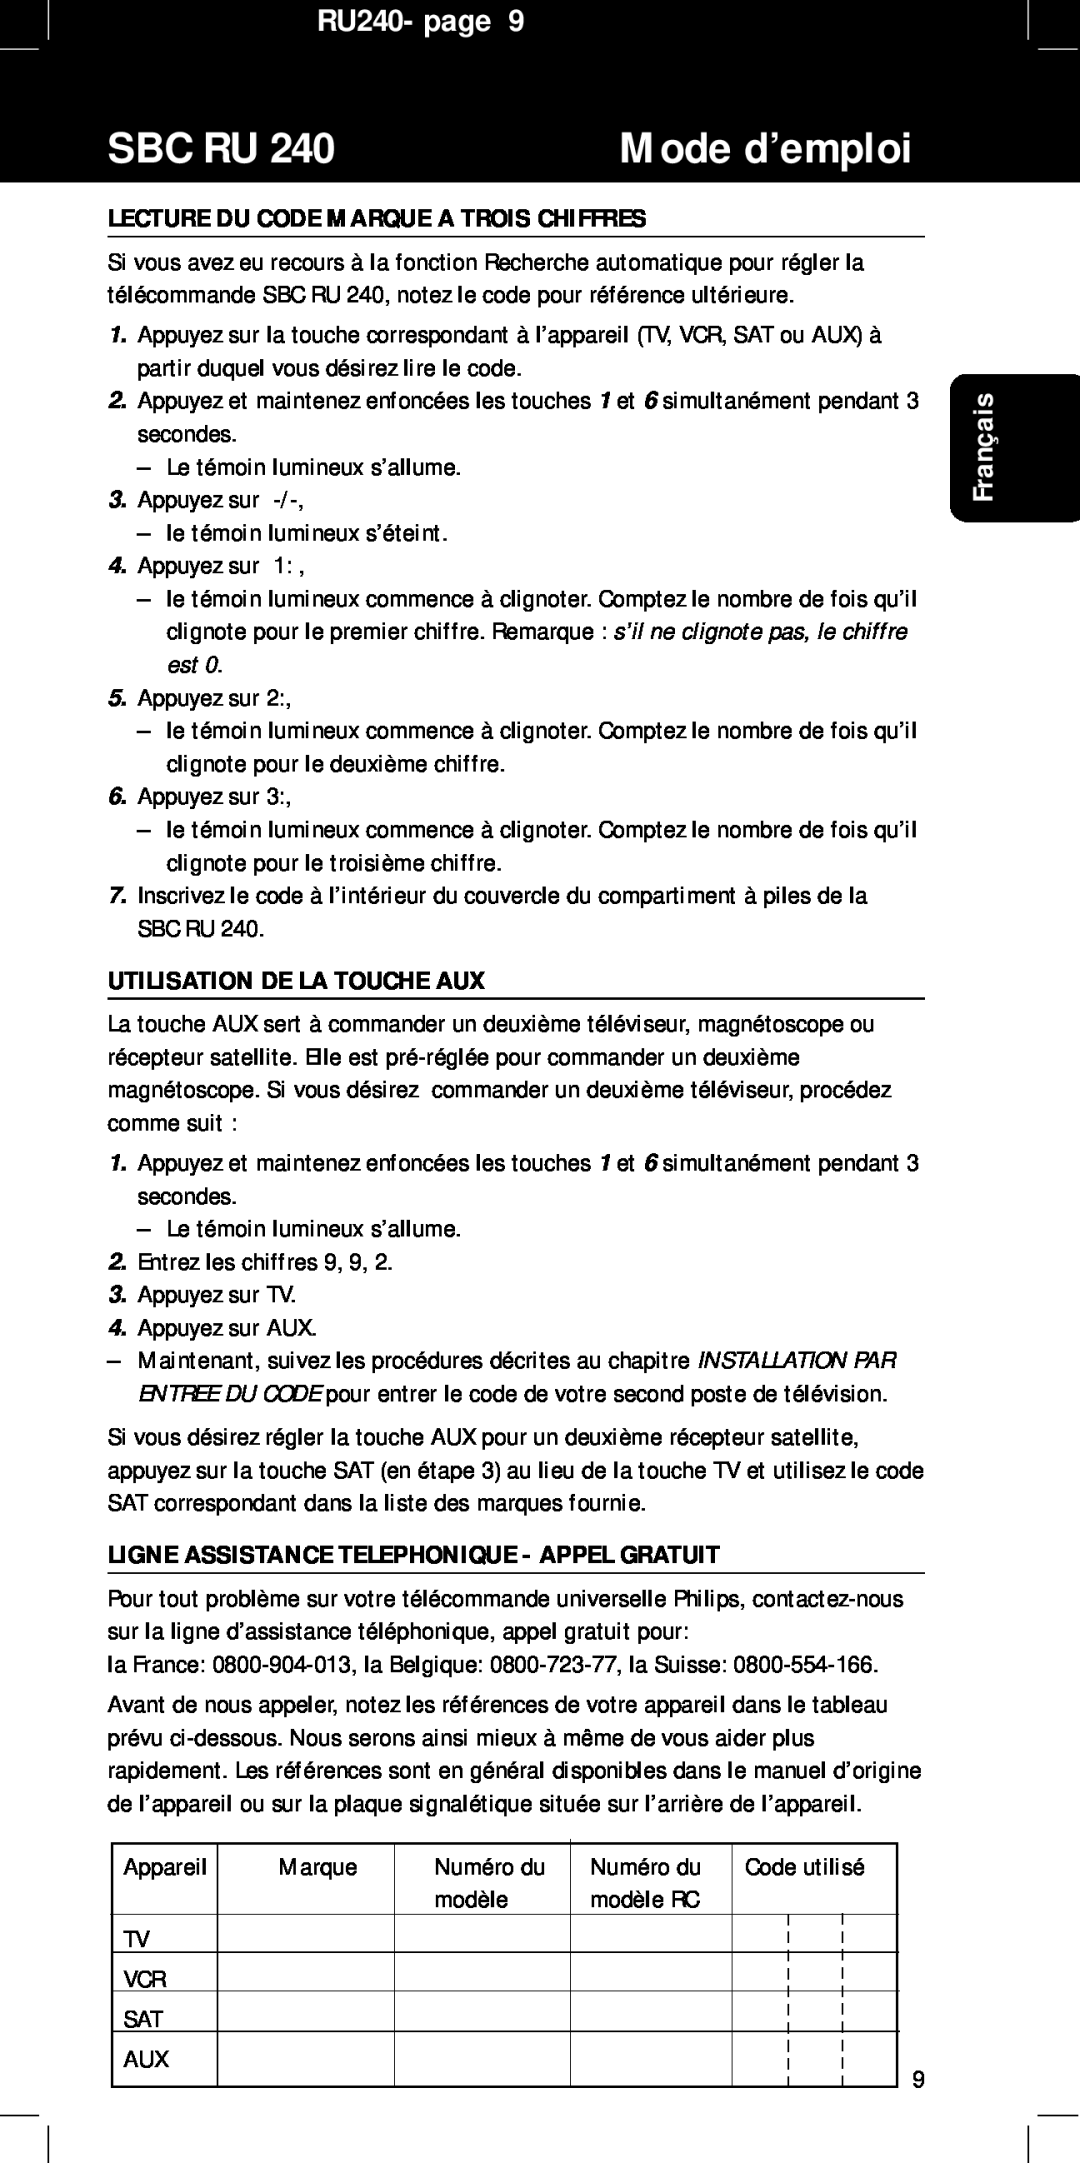 Philips manual Lecture Du Code Marque A Trois Chiffres, Utilisation De La Touche Aux, Sbc Ru, Mode d’emploi, RU240- page 